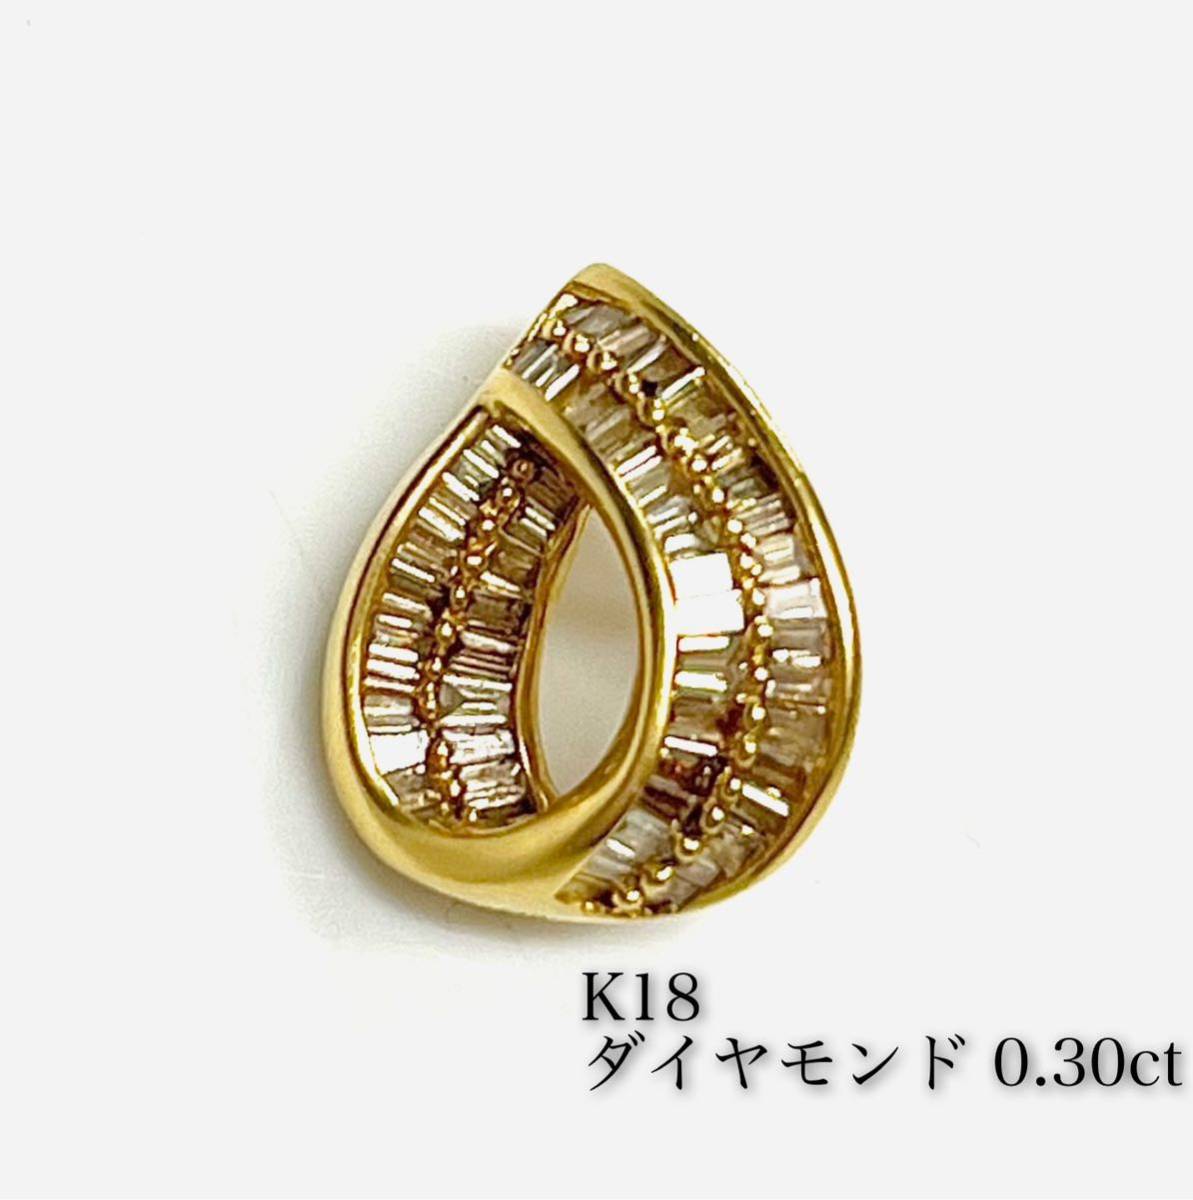 K18* Gold * diamond 0.30ct конический bageto подвеска с цепью 